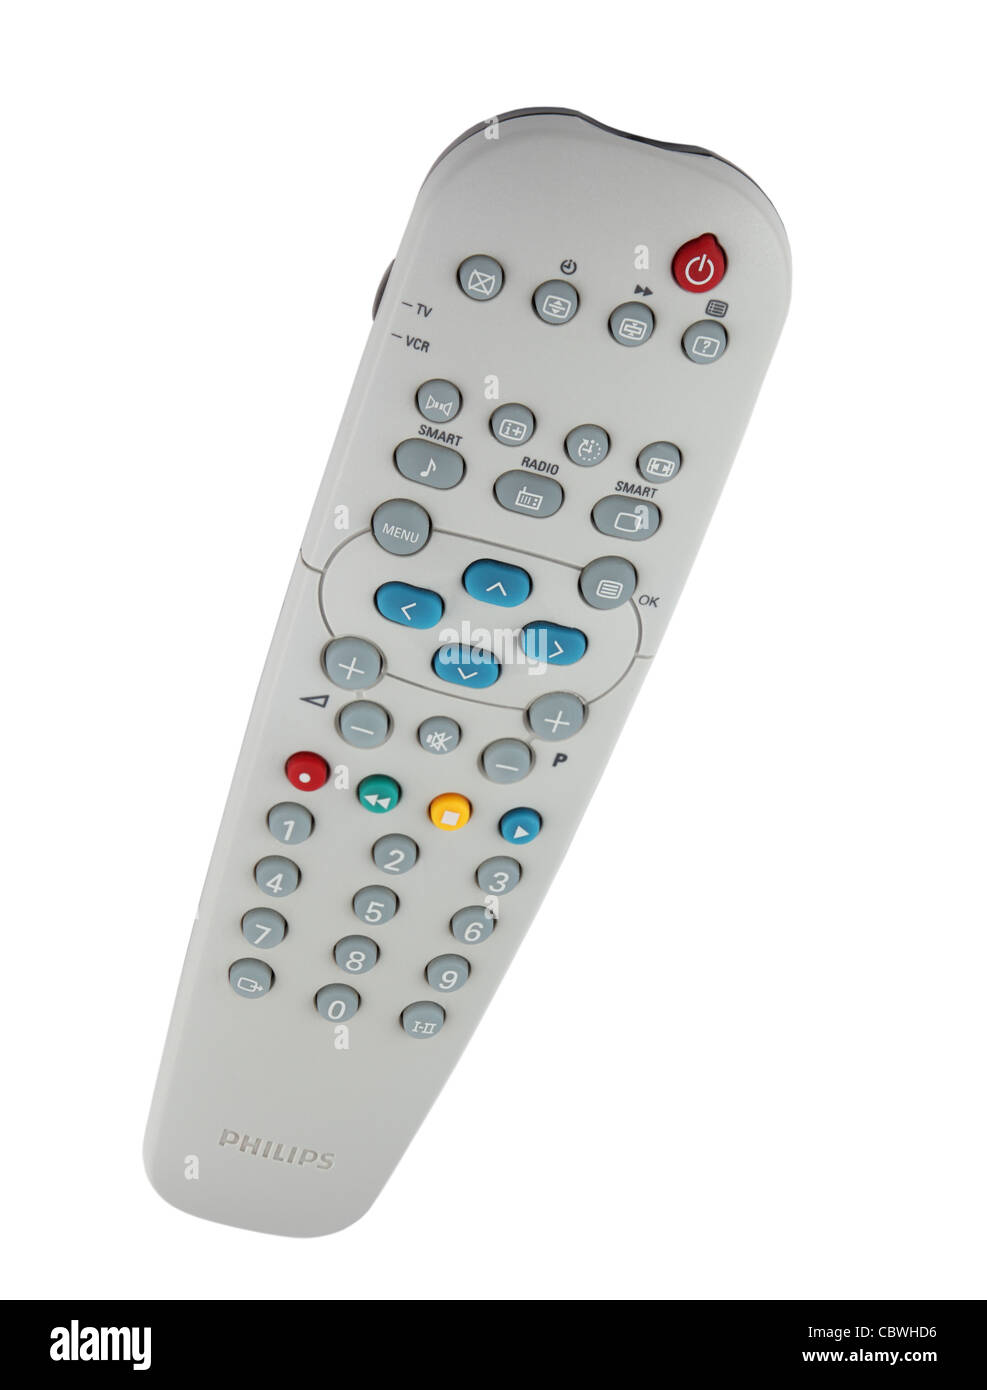 Un dispositivo de control remoto del televisor Philips aislado sobre fondo blanco. Foto de stock